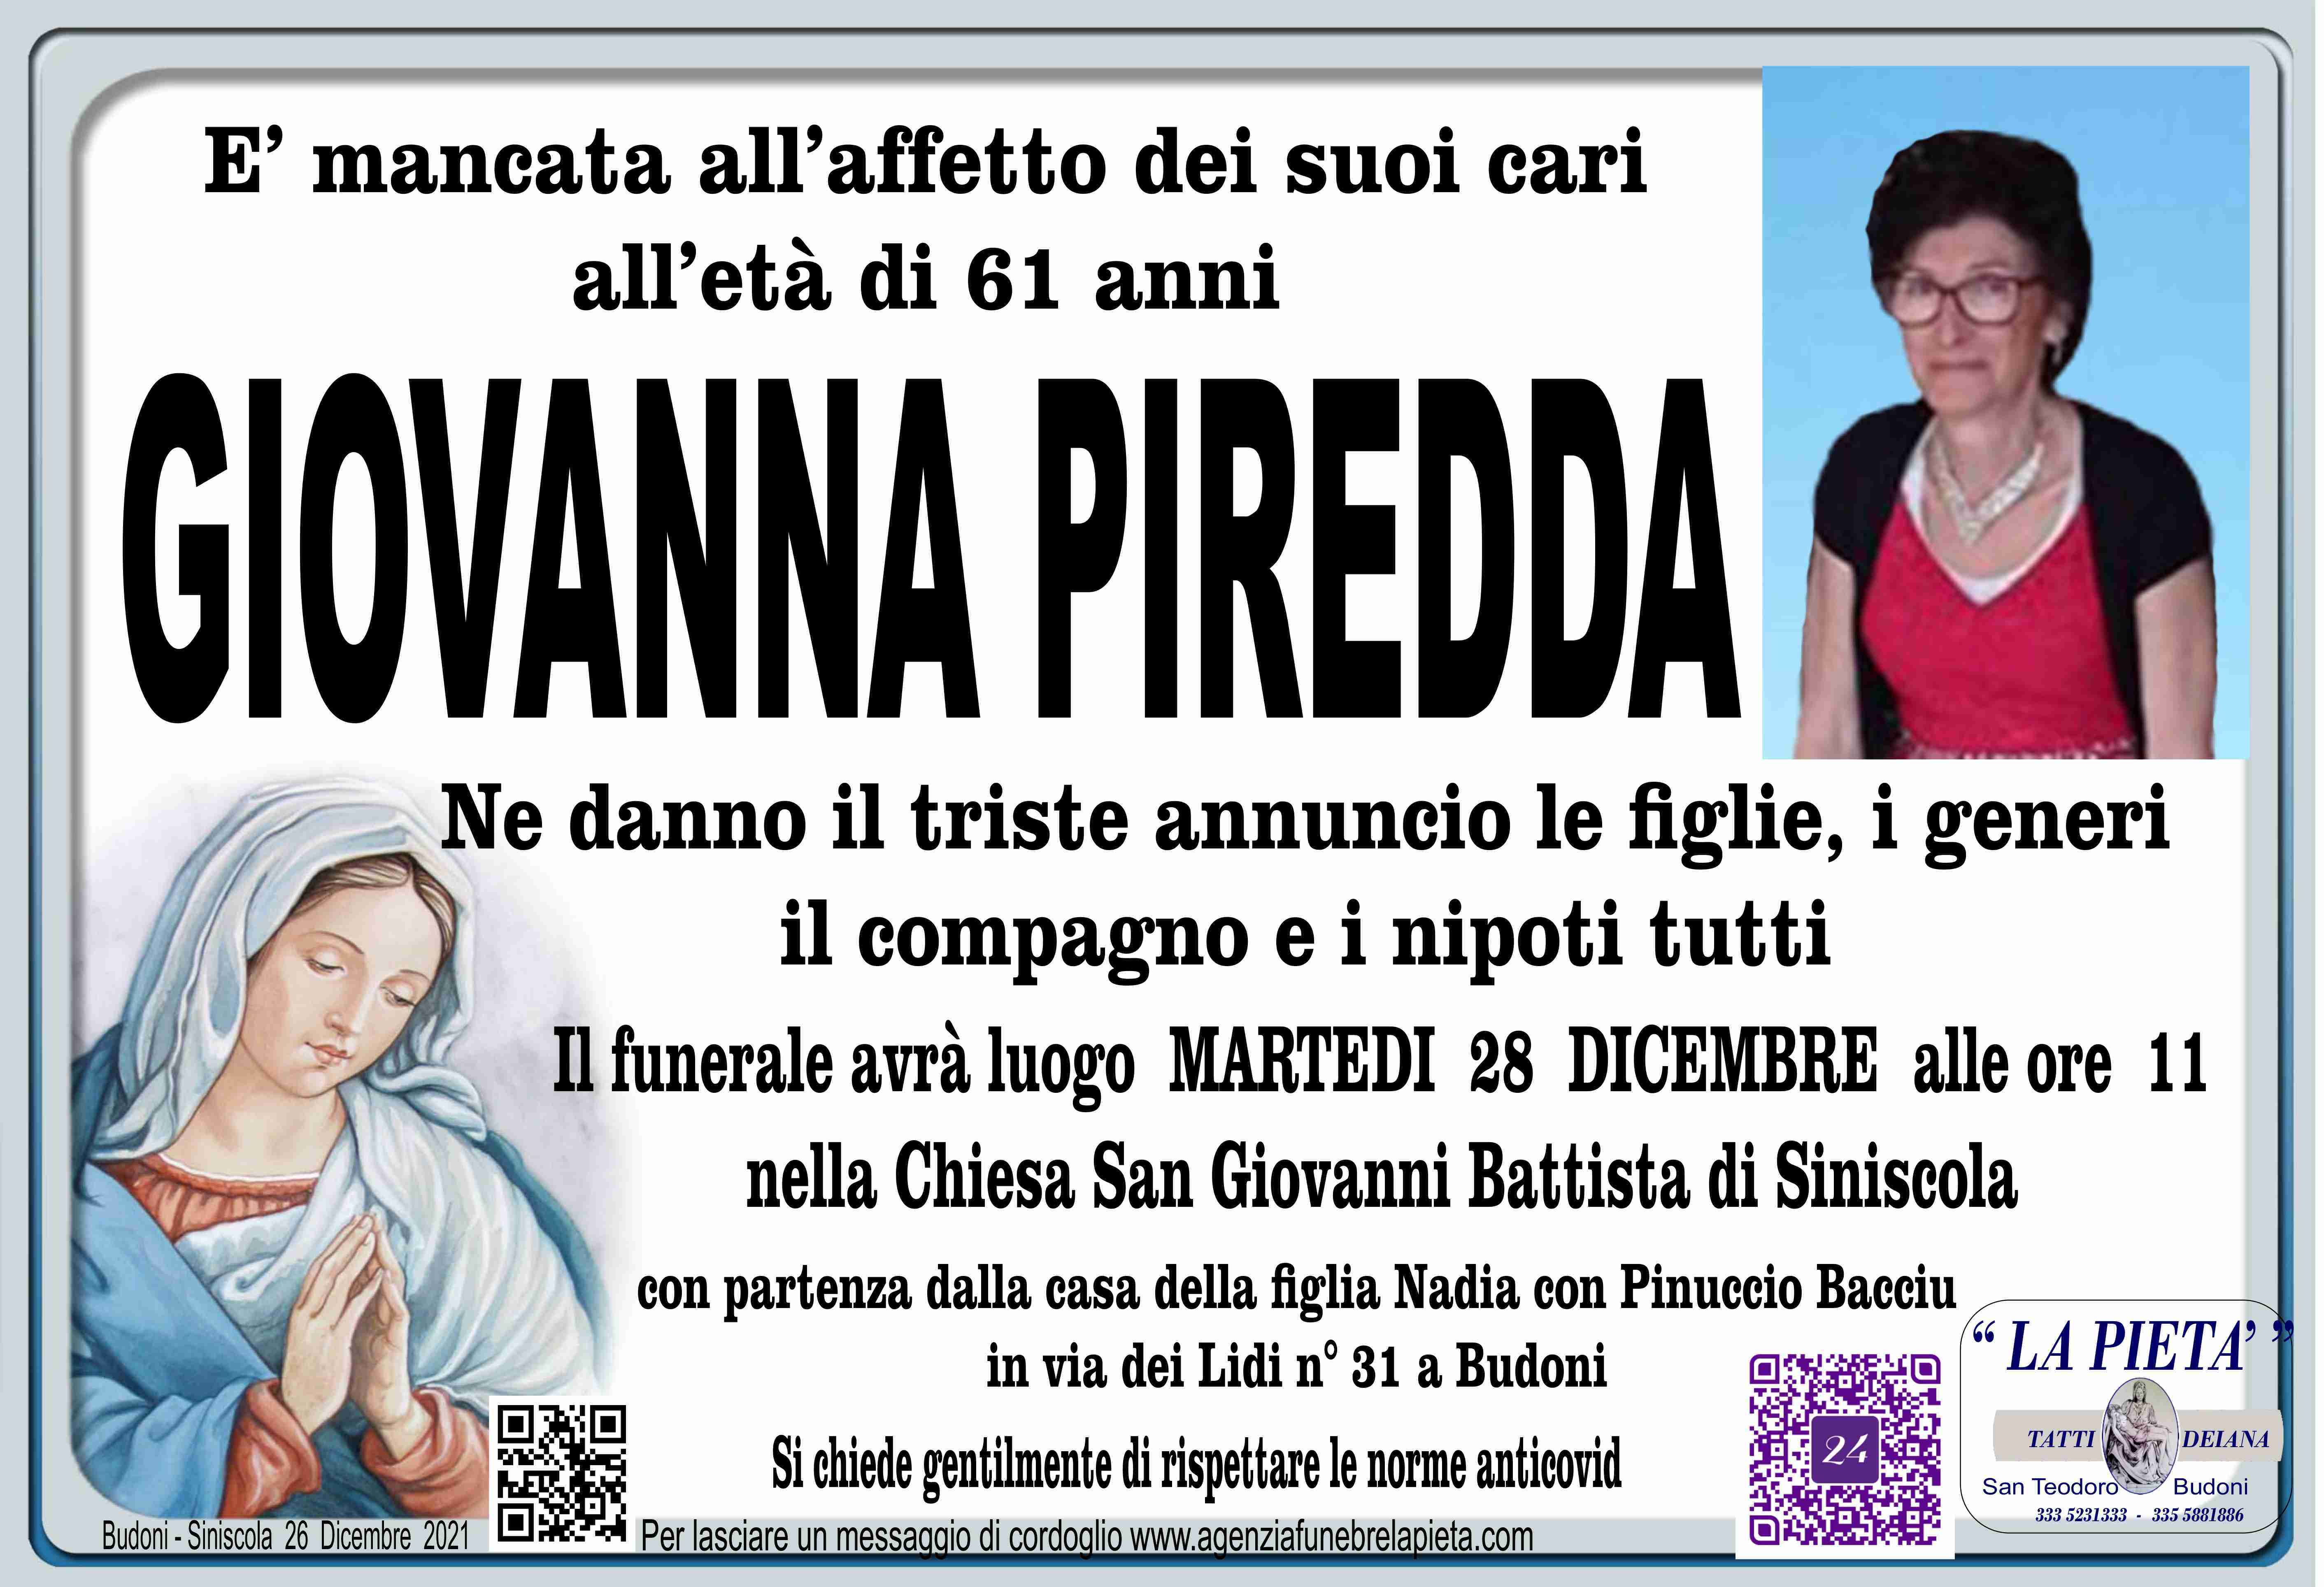 Giovanna Piredda